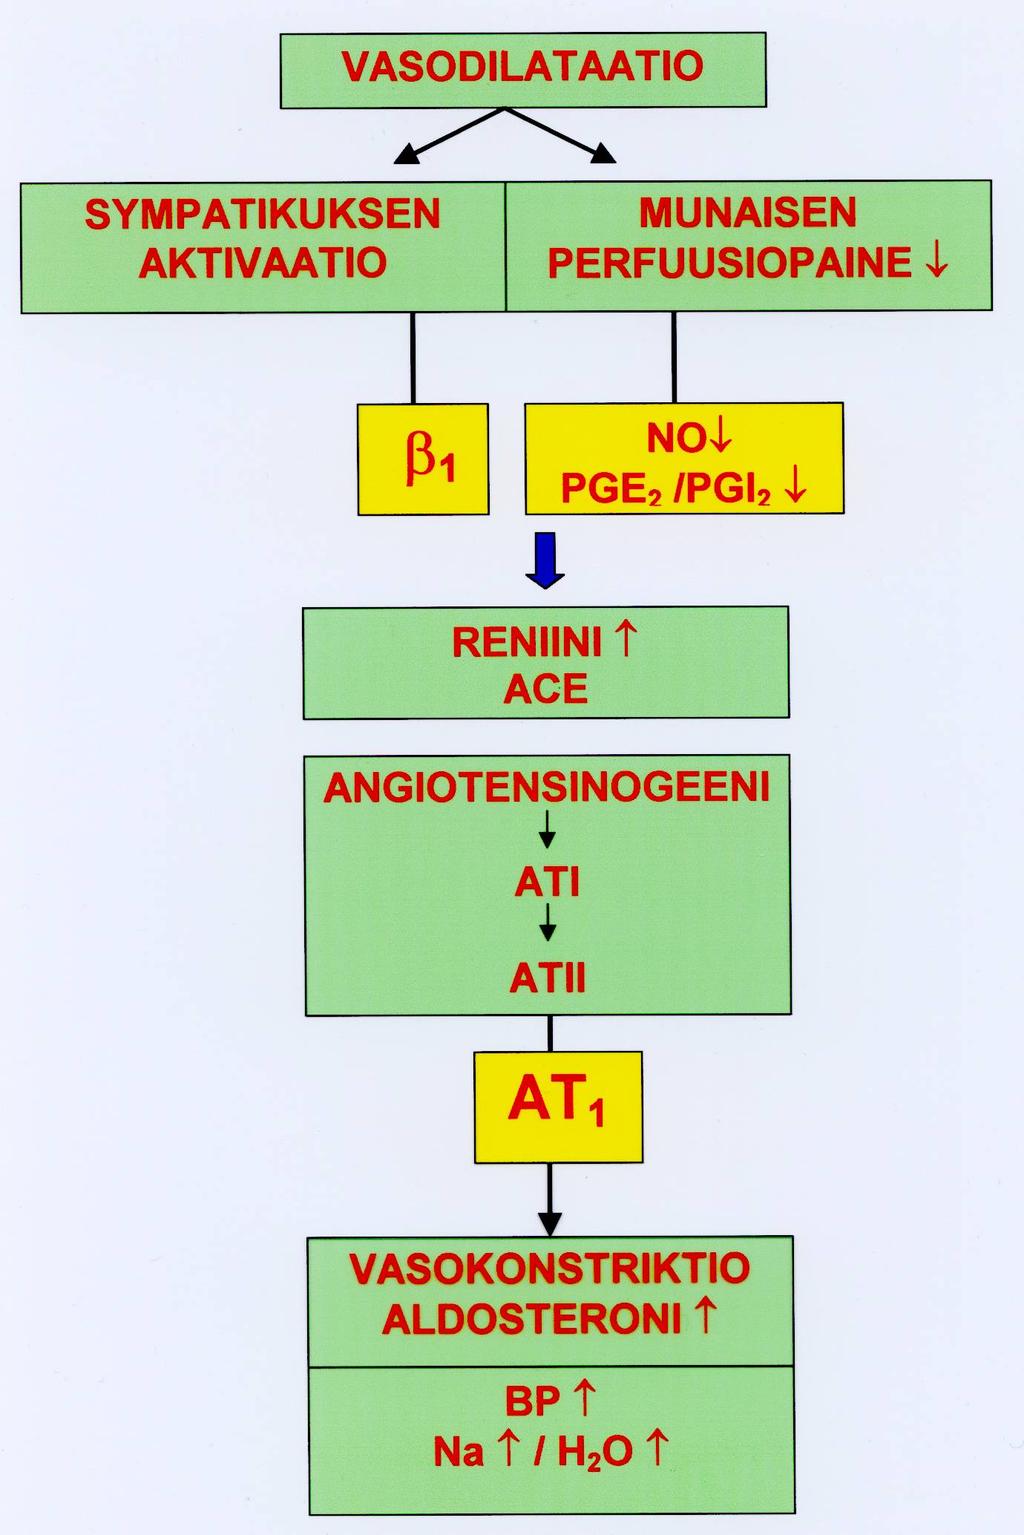 5-HT Normaali sepelvaltimo: vasodilataatio Stabiili angina: vähäinen vasokonstriktio Variantti angina: vasospasmi Reniini- angiotensiinialdosteroni